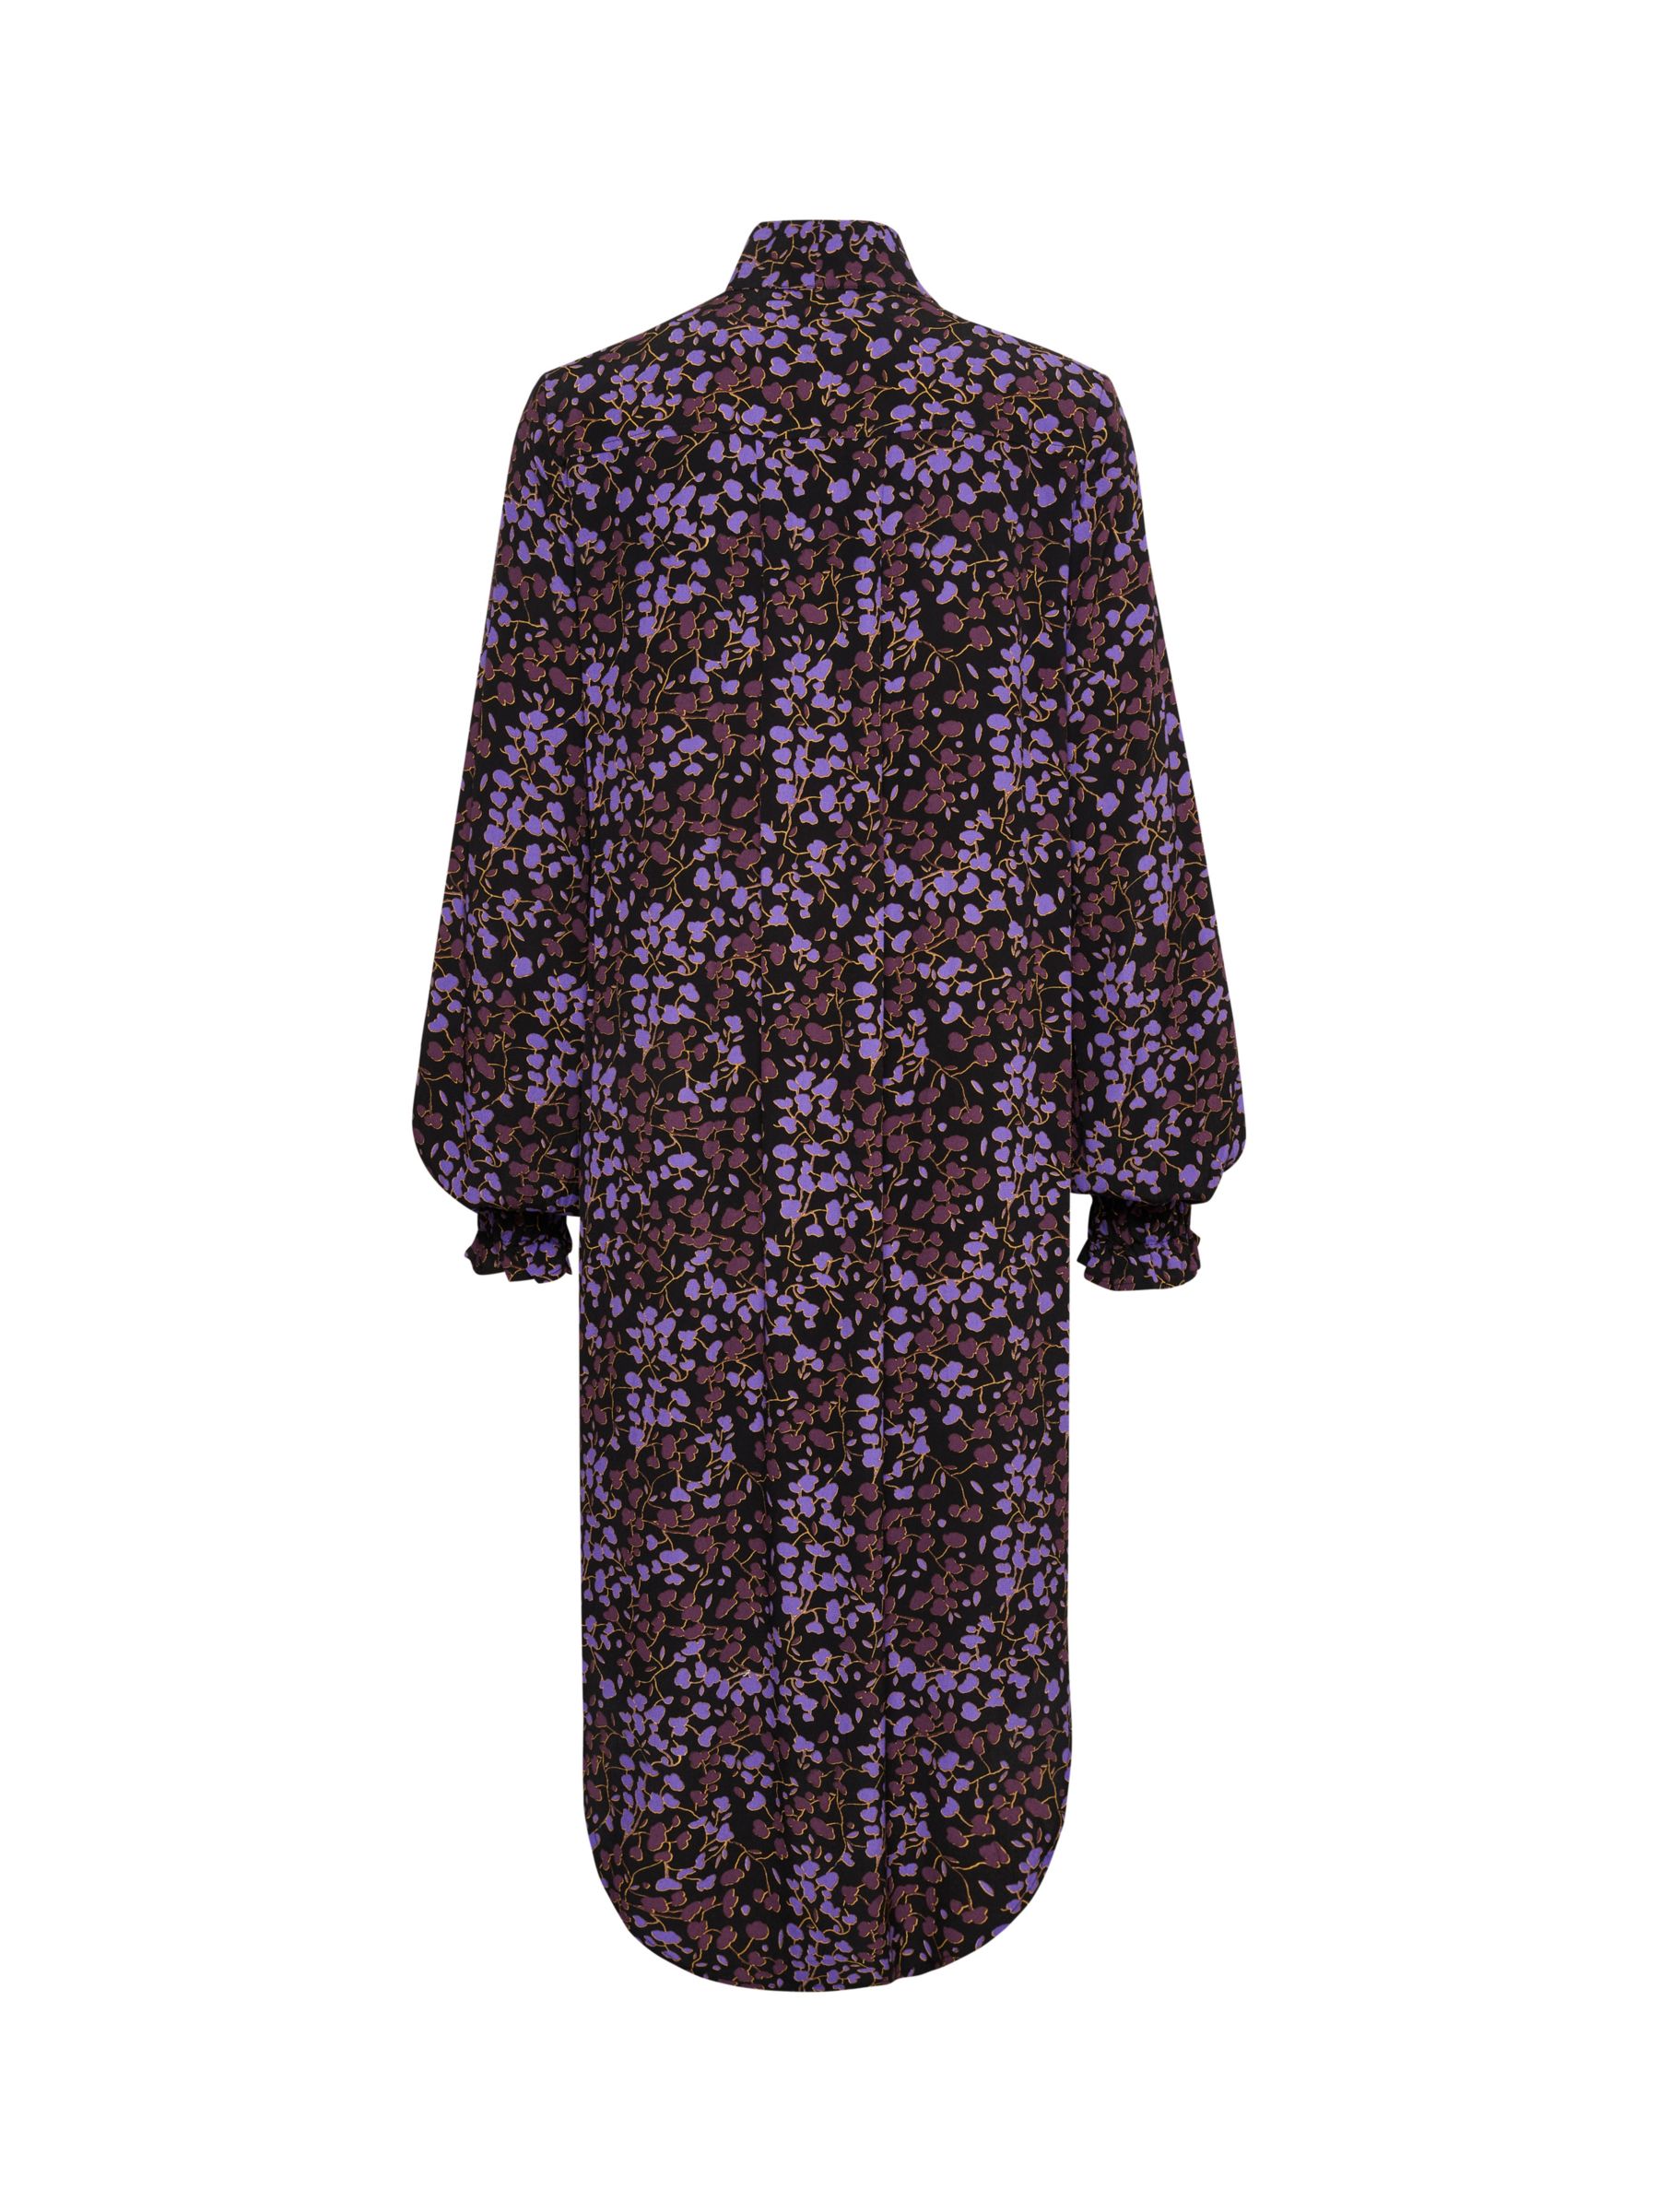 Buy Soaked In Luxury Kenna Tie Neck Long Sleeve Dress, Black/Multi Online at johnlewis.com